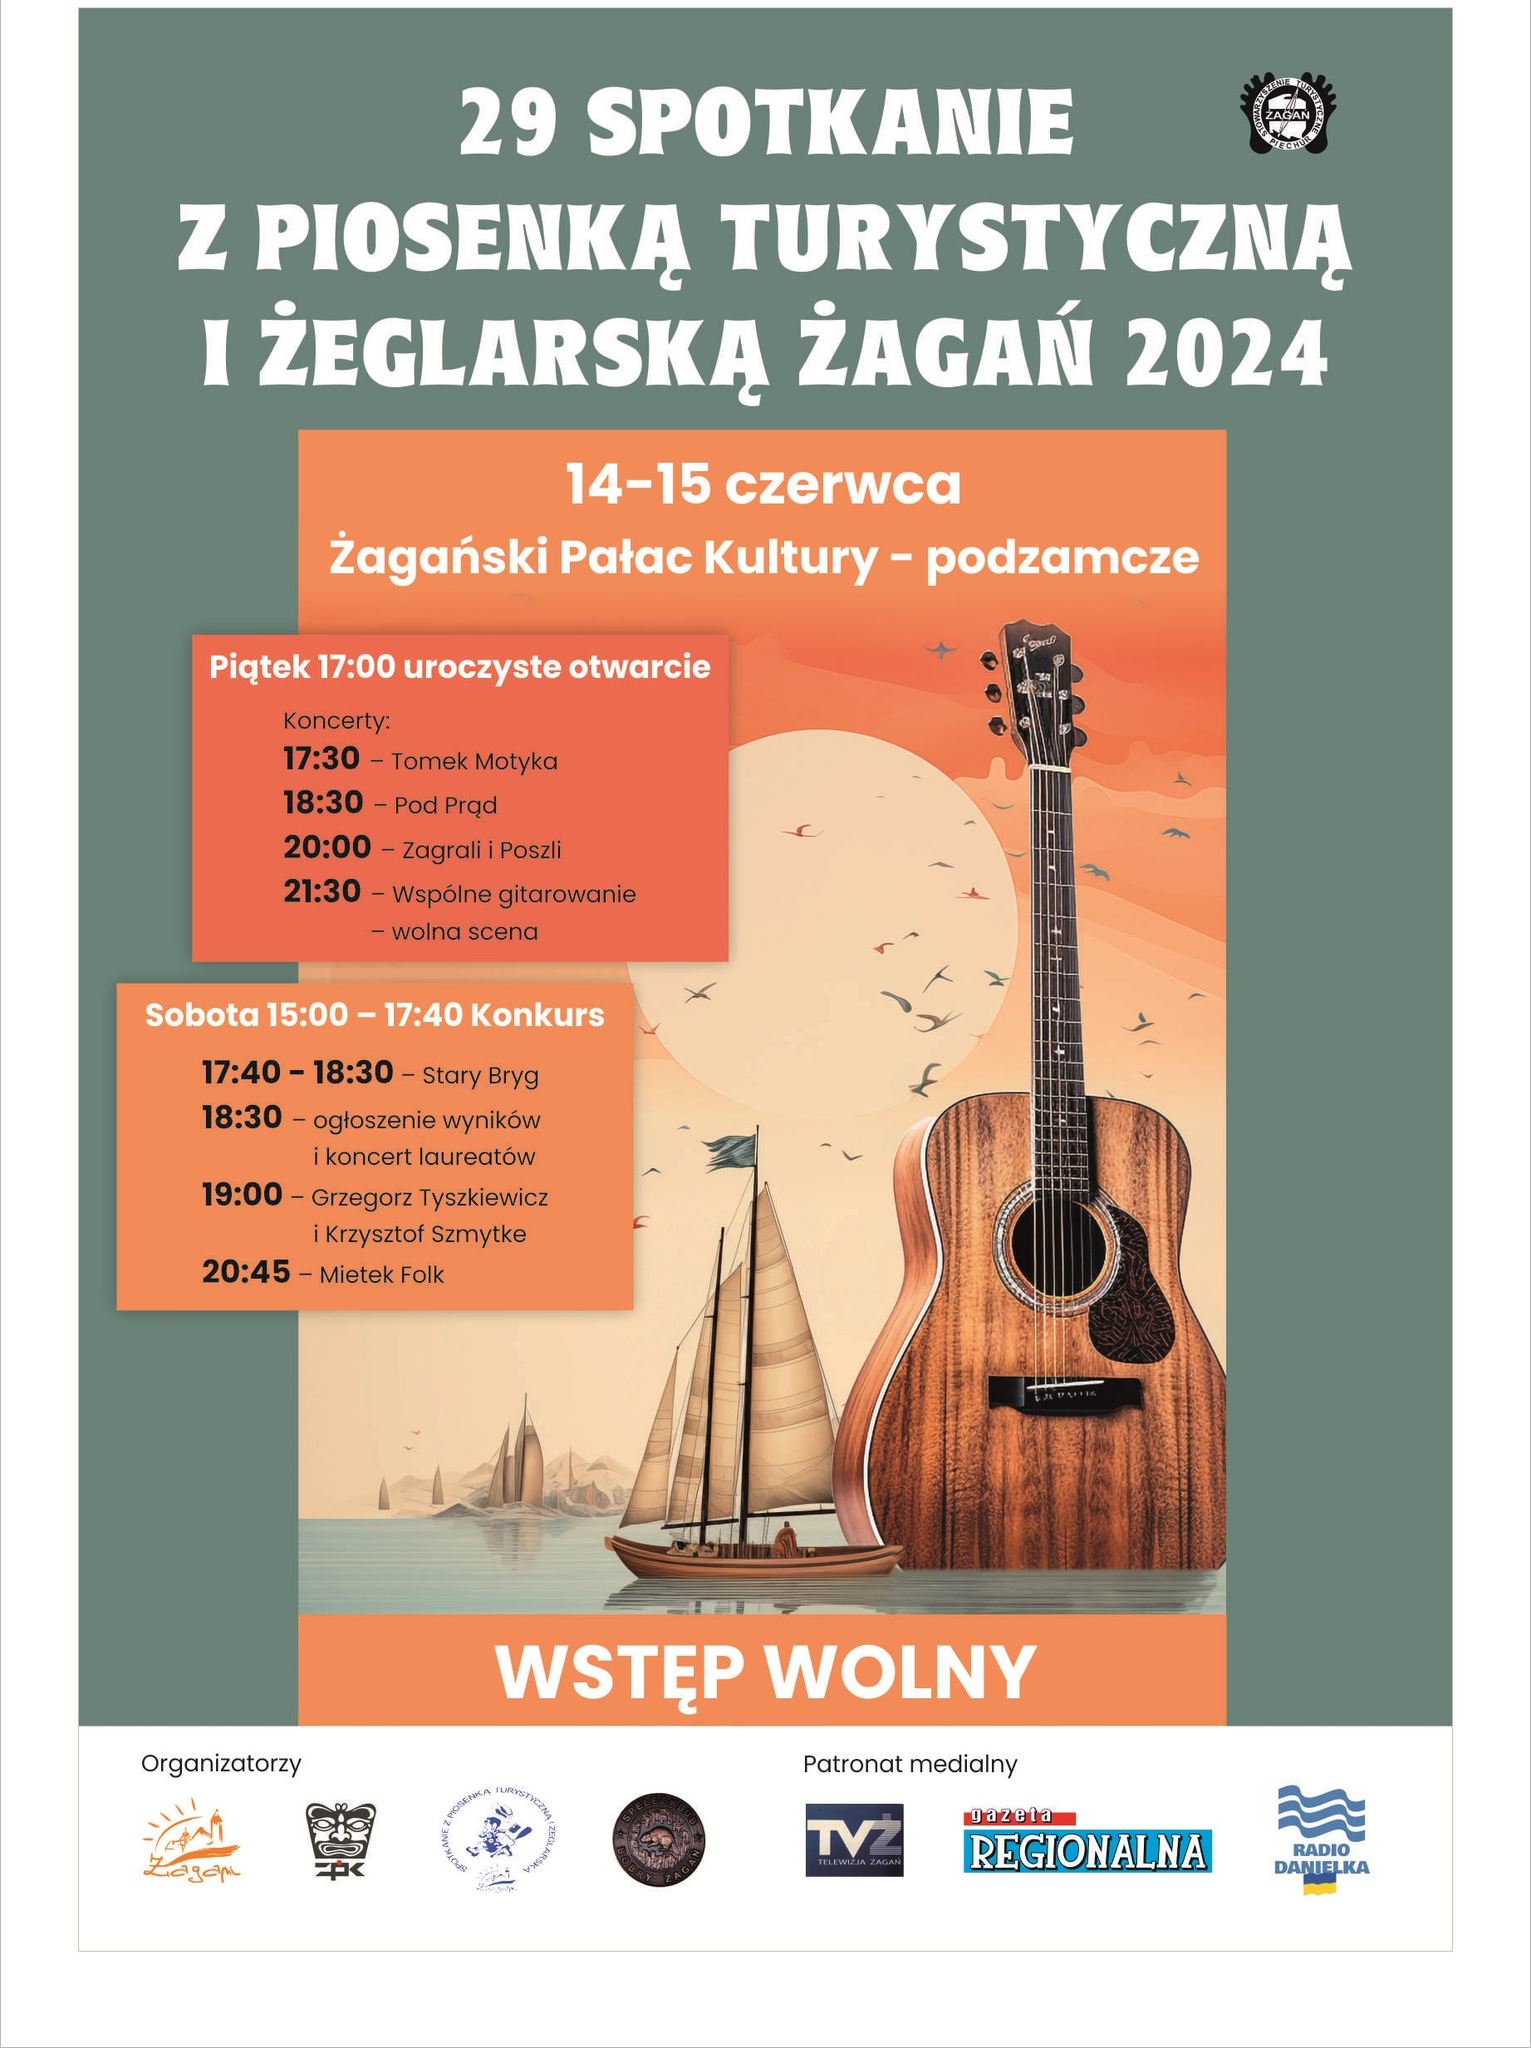 Spotkanie z piosenką turystyczną i żeglarską w Żaganiu Radio Zachód - Lubuskie